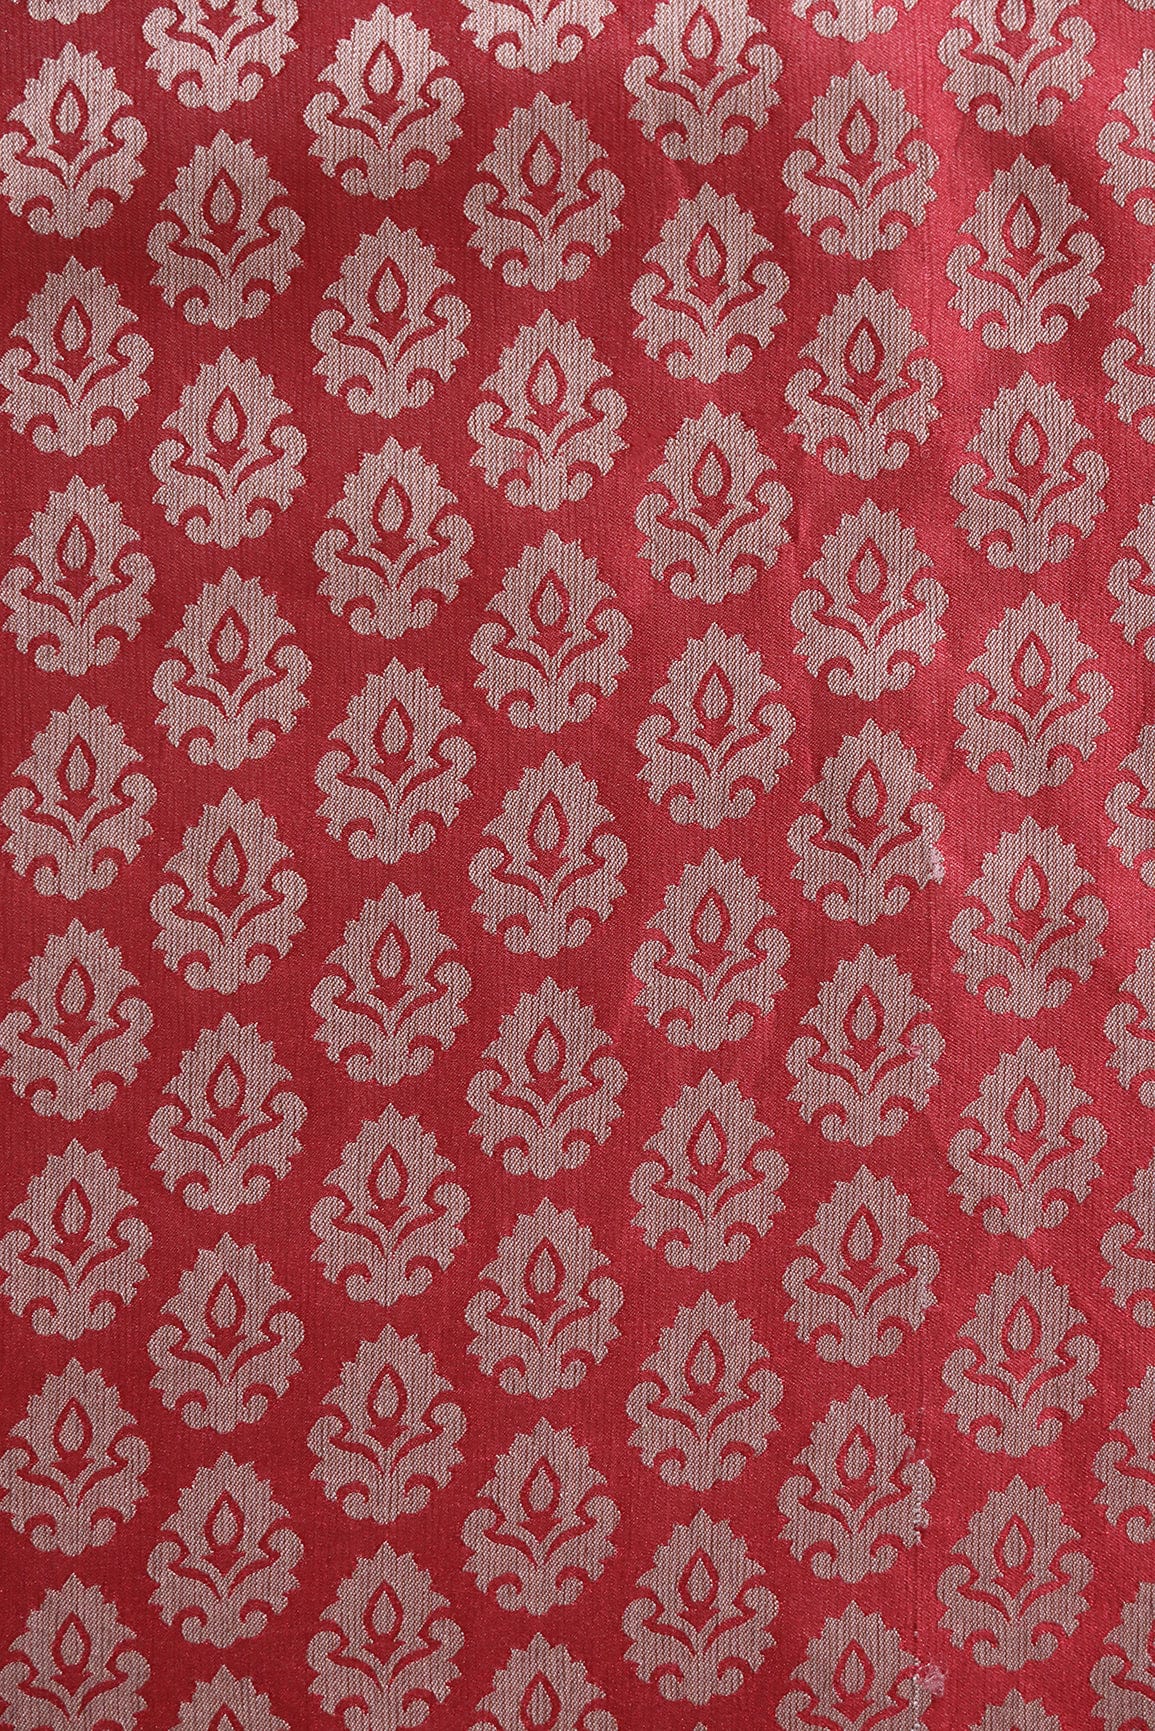 doeraa Banarasi Fabrics Red Floral Booti Silk Satin Jute Banarasi Jacquard Fabric